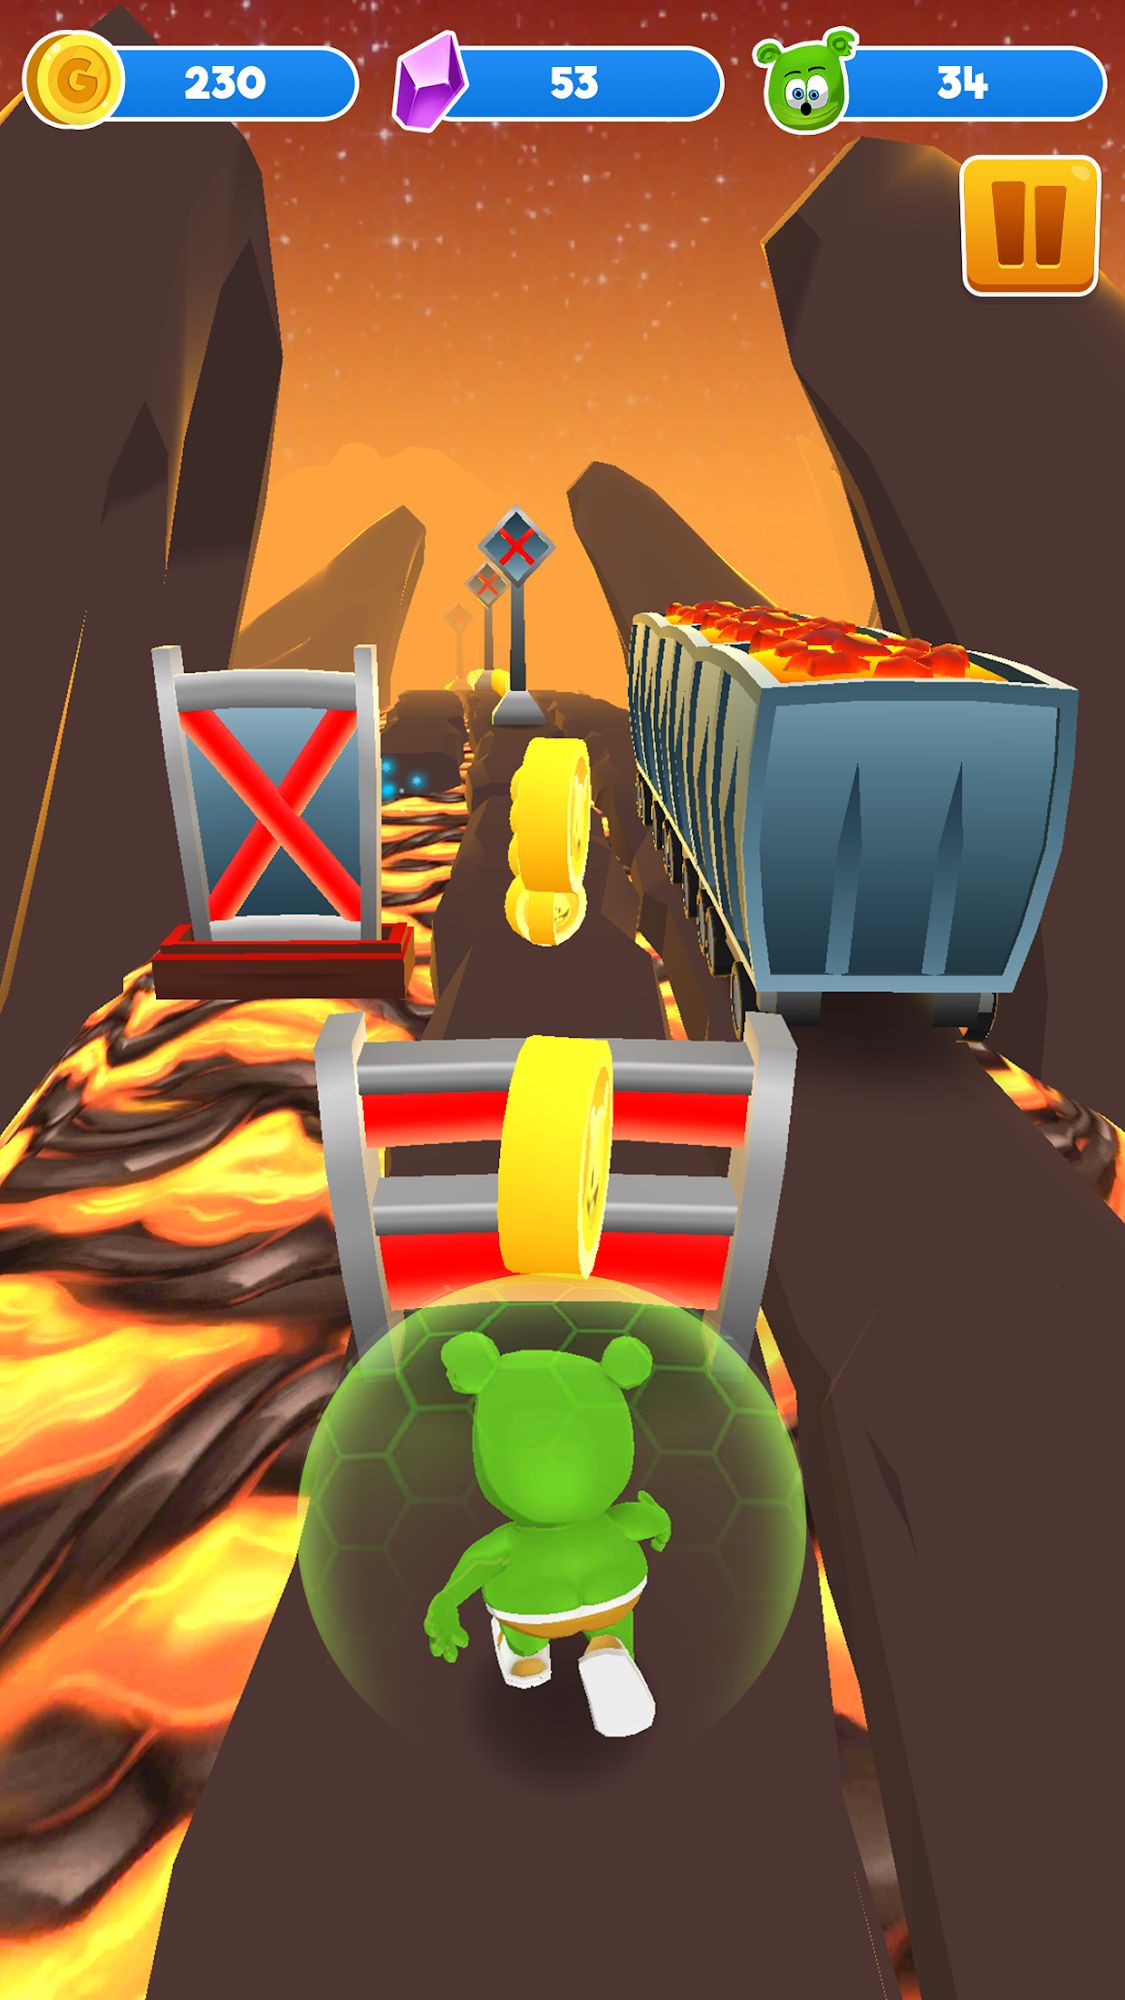 Gummy Bear Running - Endless Runner 2020 screenshot 1